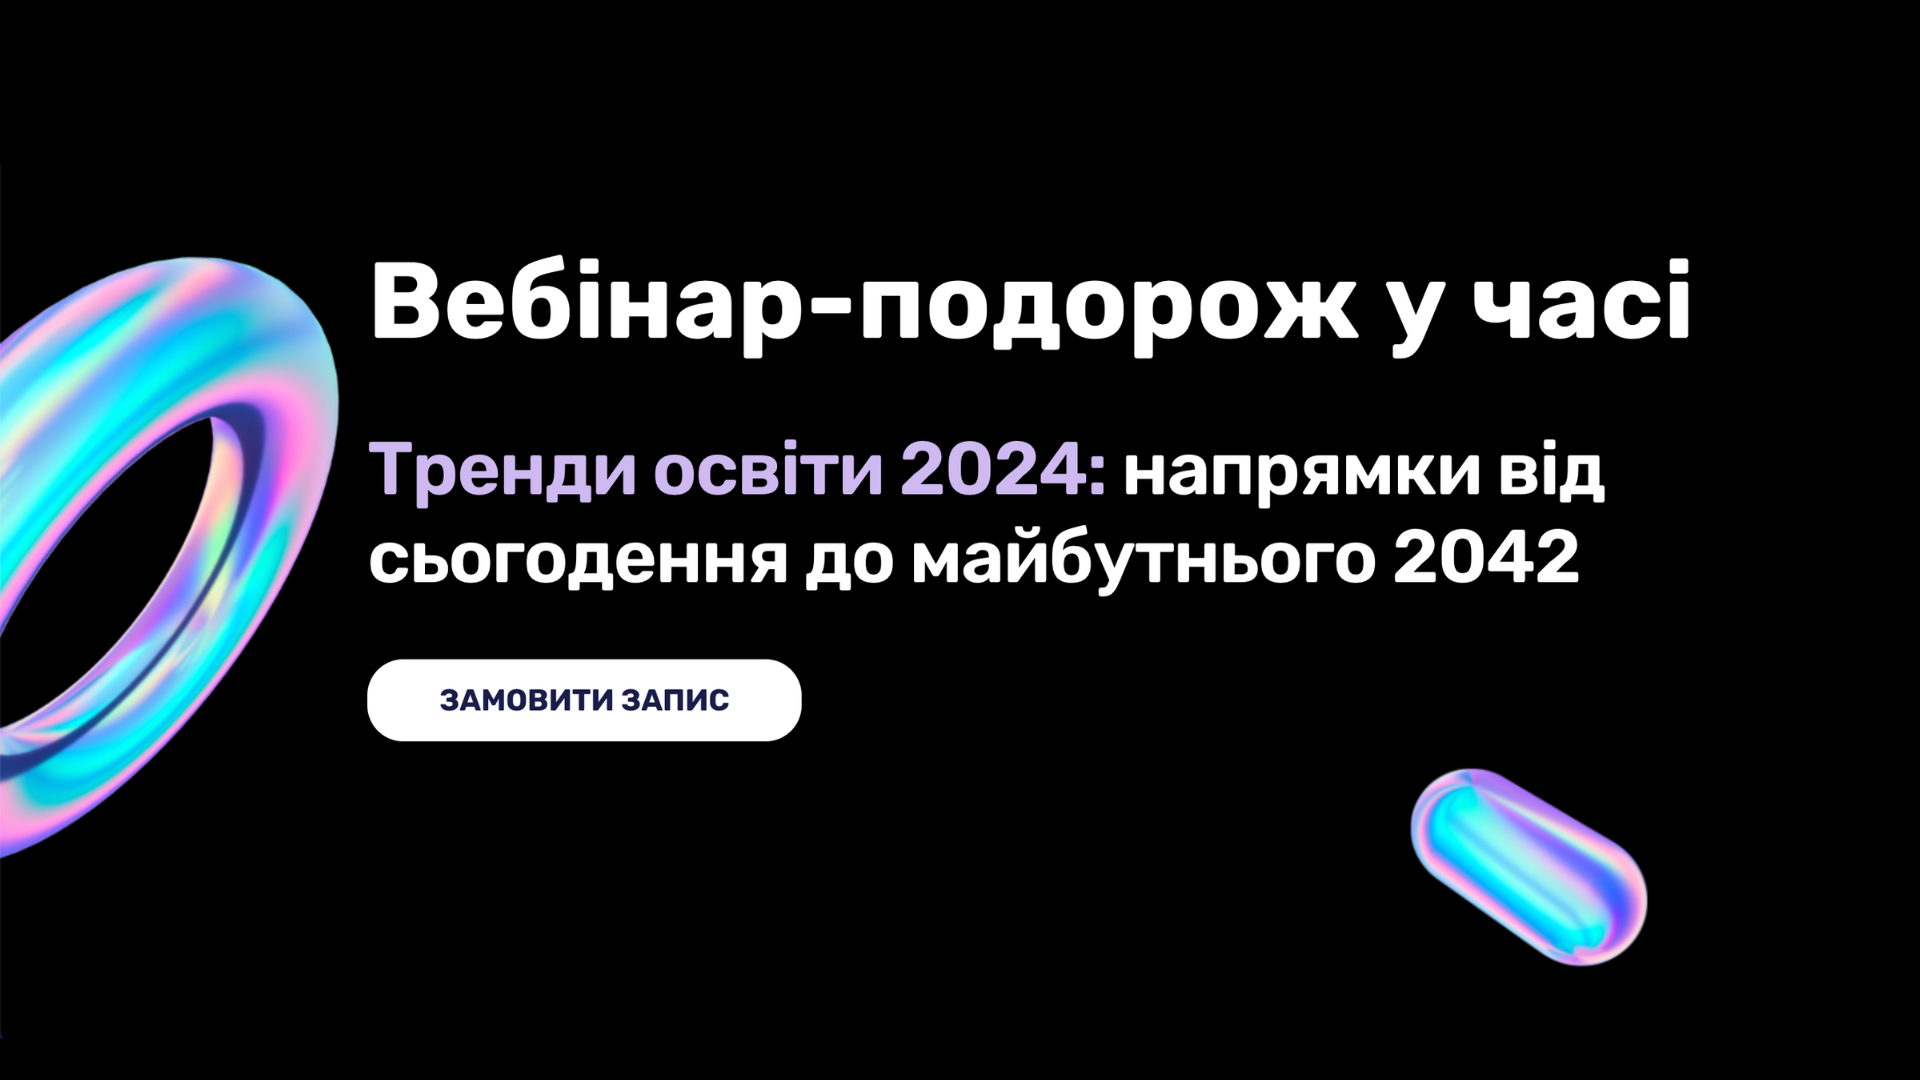 Вебінар: "Тренди освіти 2024: подорож у часі до освіти майбутнього"